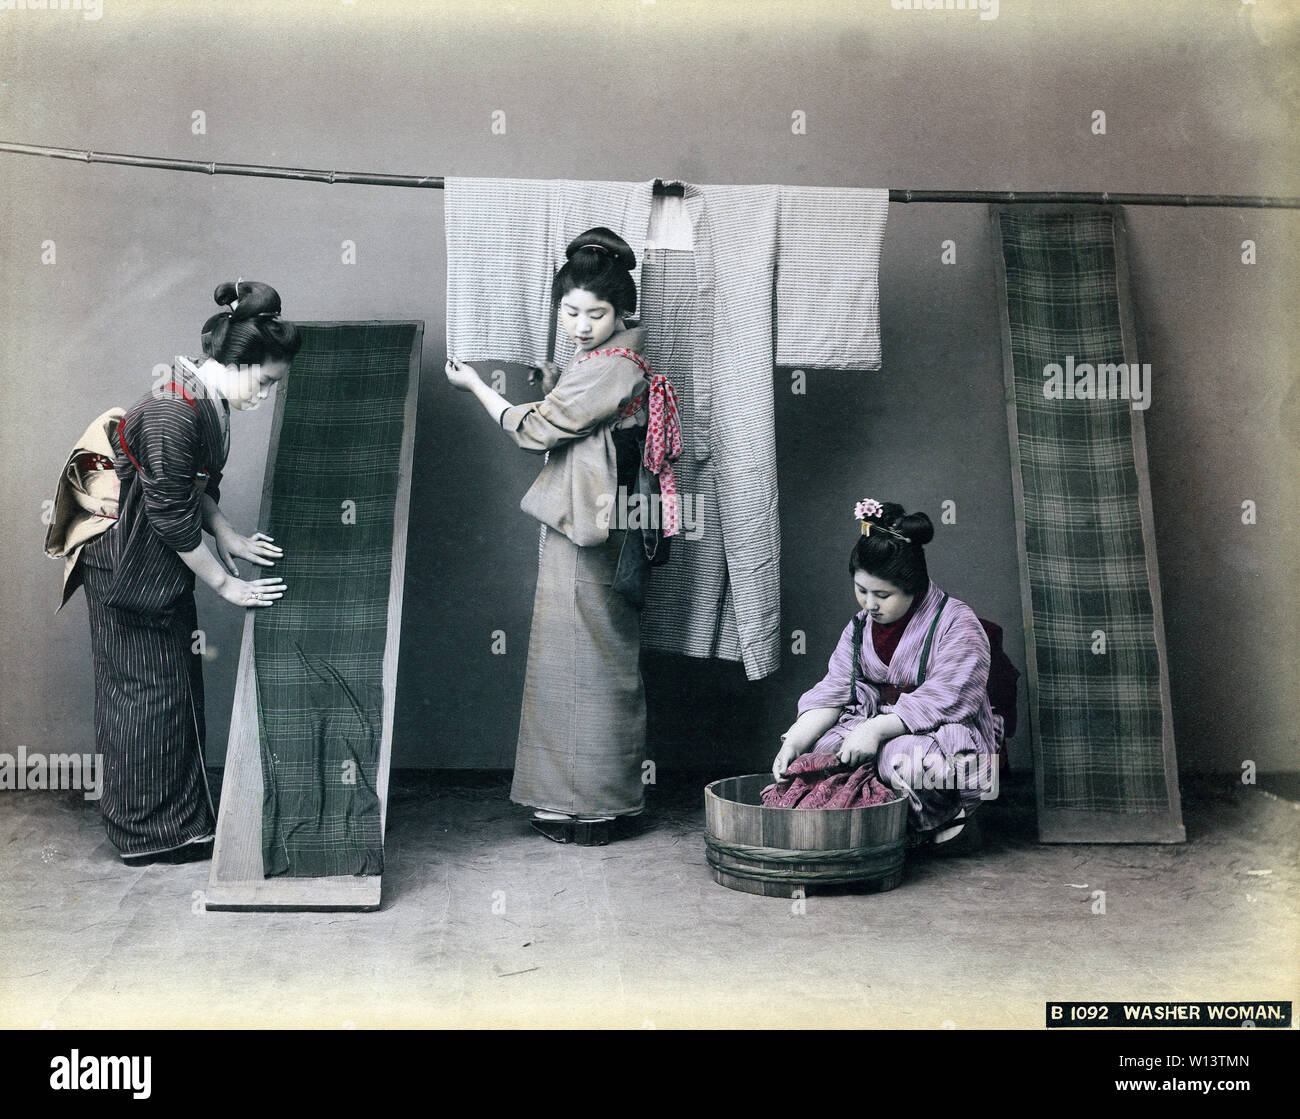 [1890s Japan - Japanische Frauen Waschen Kimono] - Drei Frauen im Kimono und traditionellen Kopfbedeckungen sind die Wäsche machen. Die Frau auf der rechten Seite ist die Wäsche waschen in einem Oke (hölzerne Schaufel), während eine Frau auf der linken Seite ist die Verbreitung einer getrennt Kimono auf einem Holzbrett. 19 Vintage albumen Foto. Stockfoto